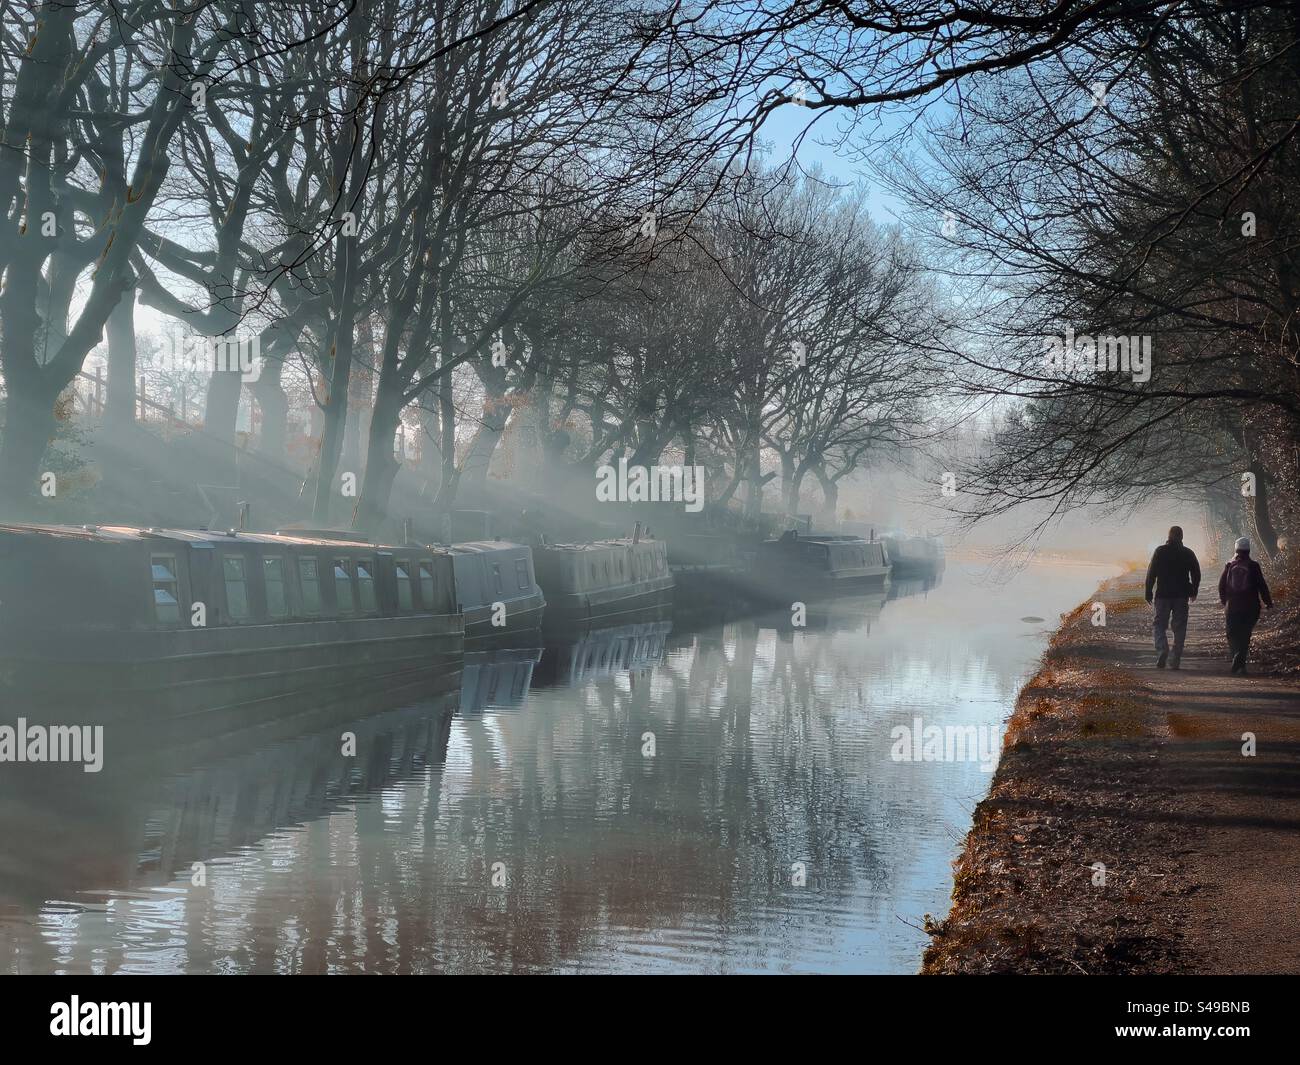 Deux personnes marchant sur le chemin de remorquage de Leeds et Liverpool canal dans la brume du matin. Bateaux étroits et arbres reflétés dans le canal. Adlington près de Chorley dans le Lancashire. Banque D'Images